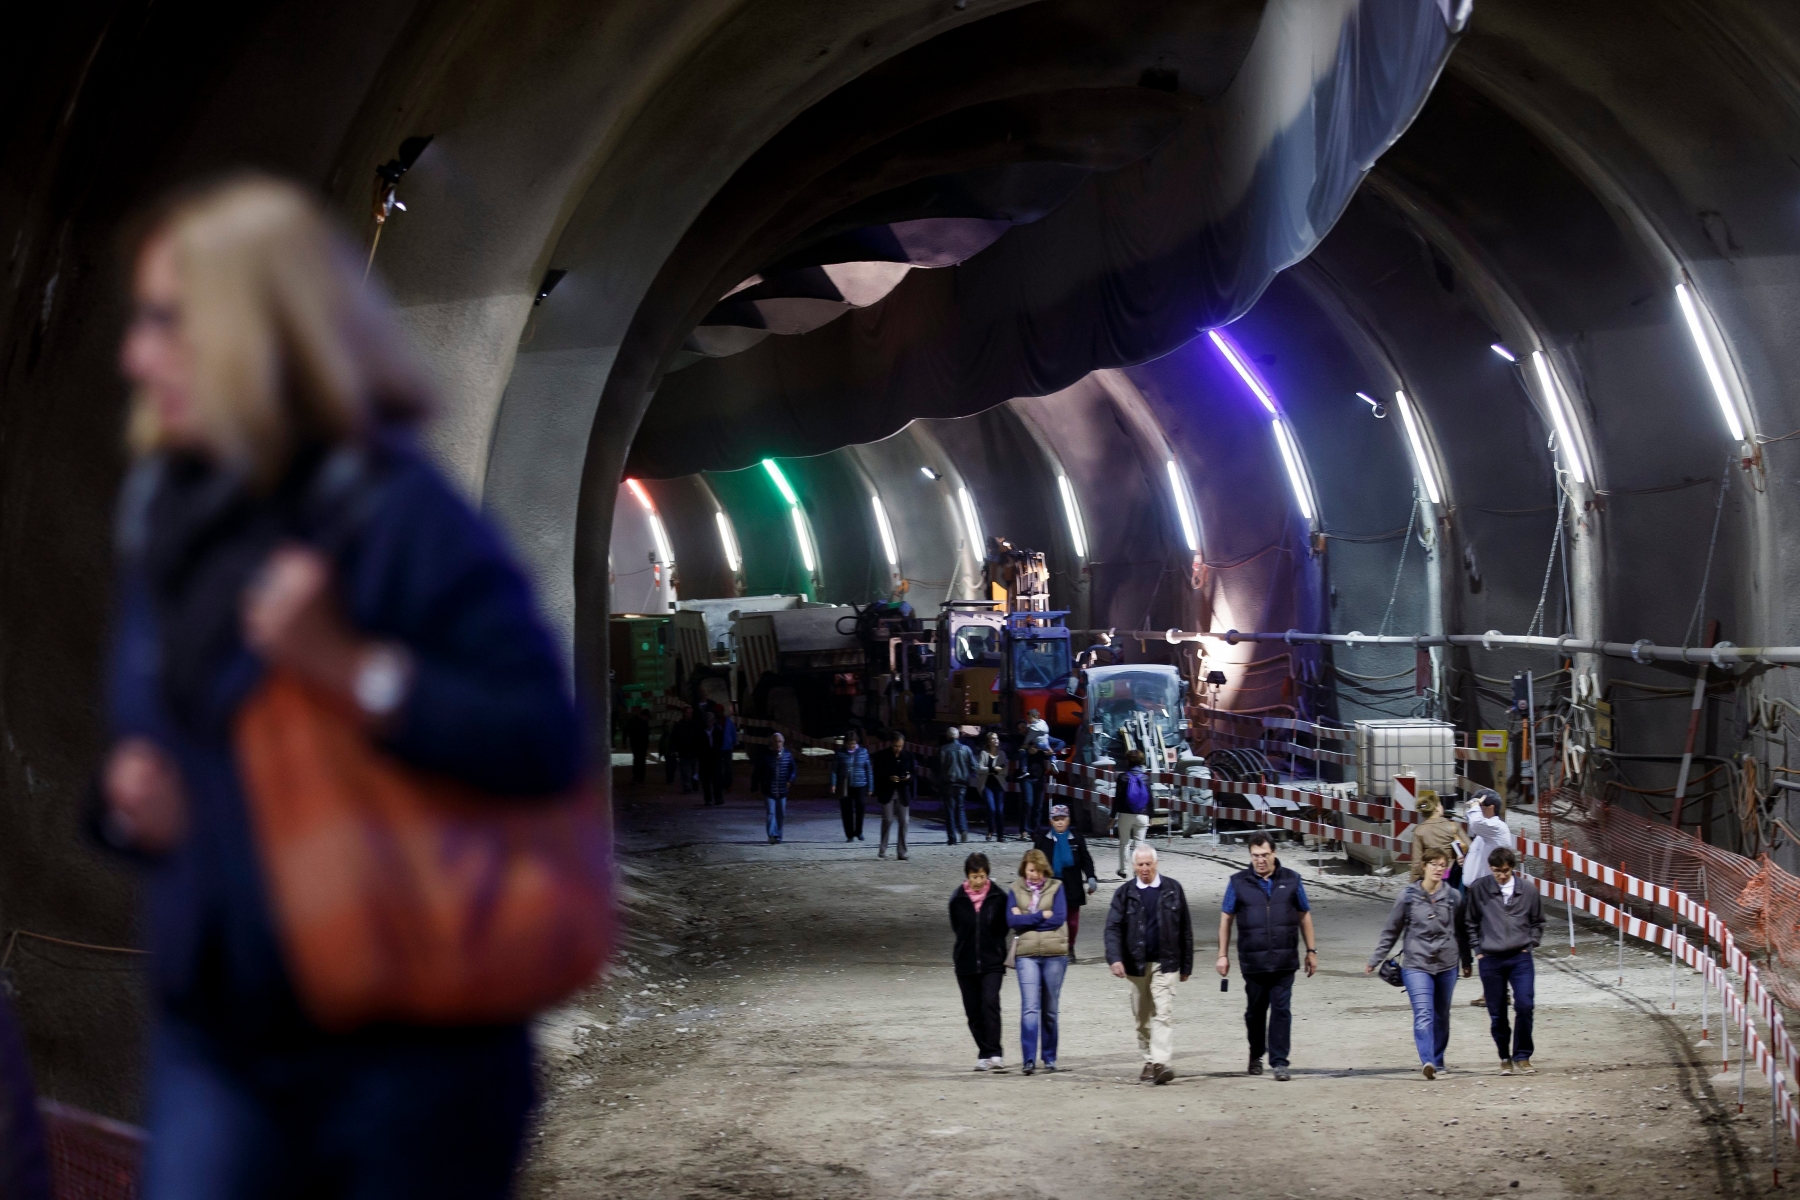 Des personnes visitent le chantier du tunnel du Val d'Arve a l'occasion des journees portes ouvertes du CEVA (Liaison ferroviaire Cornavin, Eaux-Vives, Annemasse), ce samedi 26 septembre 2015 a Carouge pres de Geneve. (KEYSTONE/Salvatore Di Nolfi) SUISSE CEVA PORTES OUVERTES